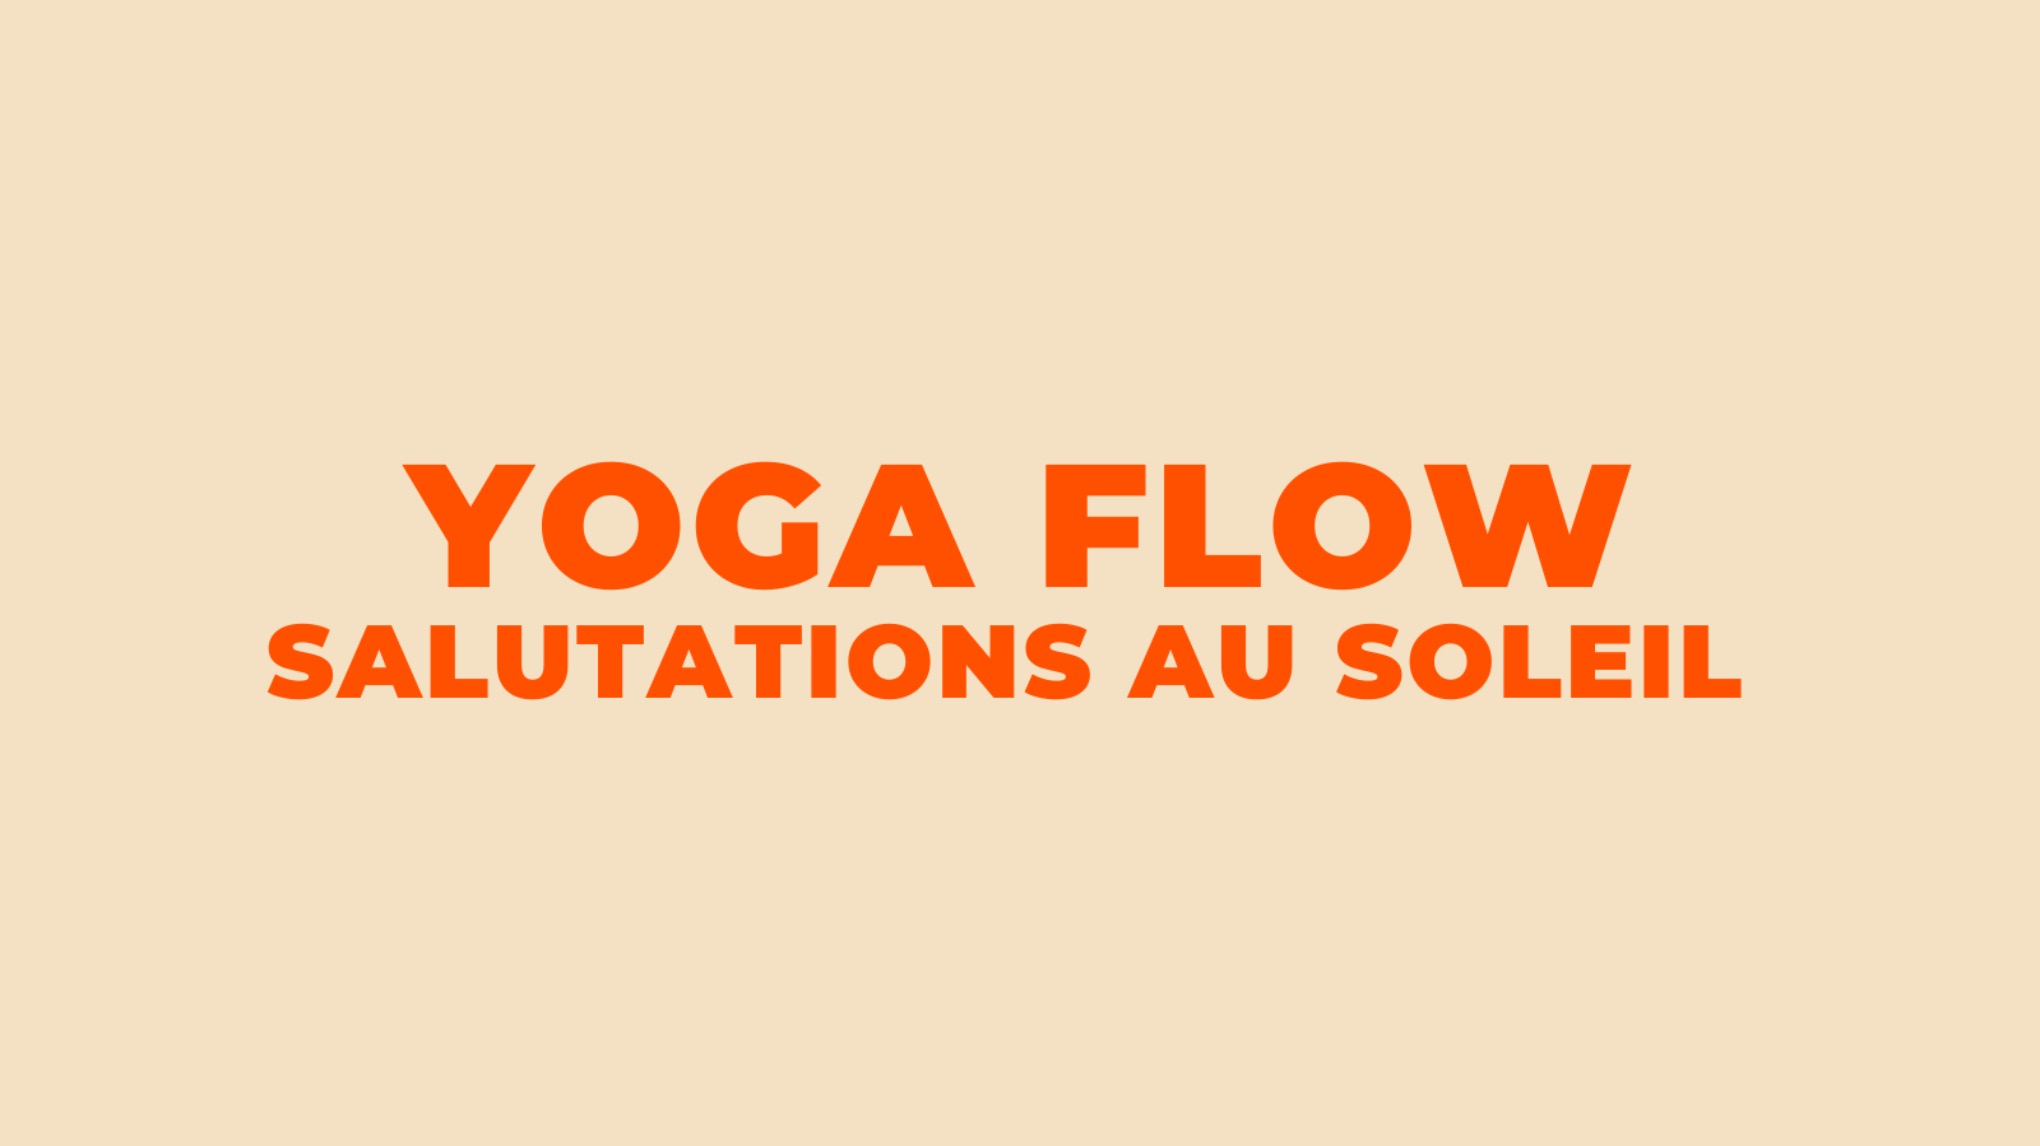 Yoga Flow - Salutations au soleil